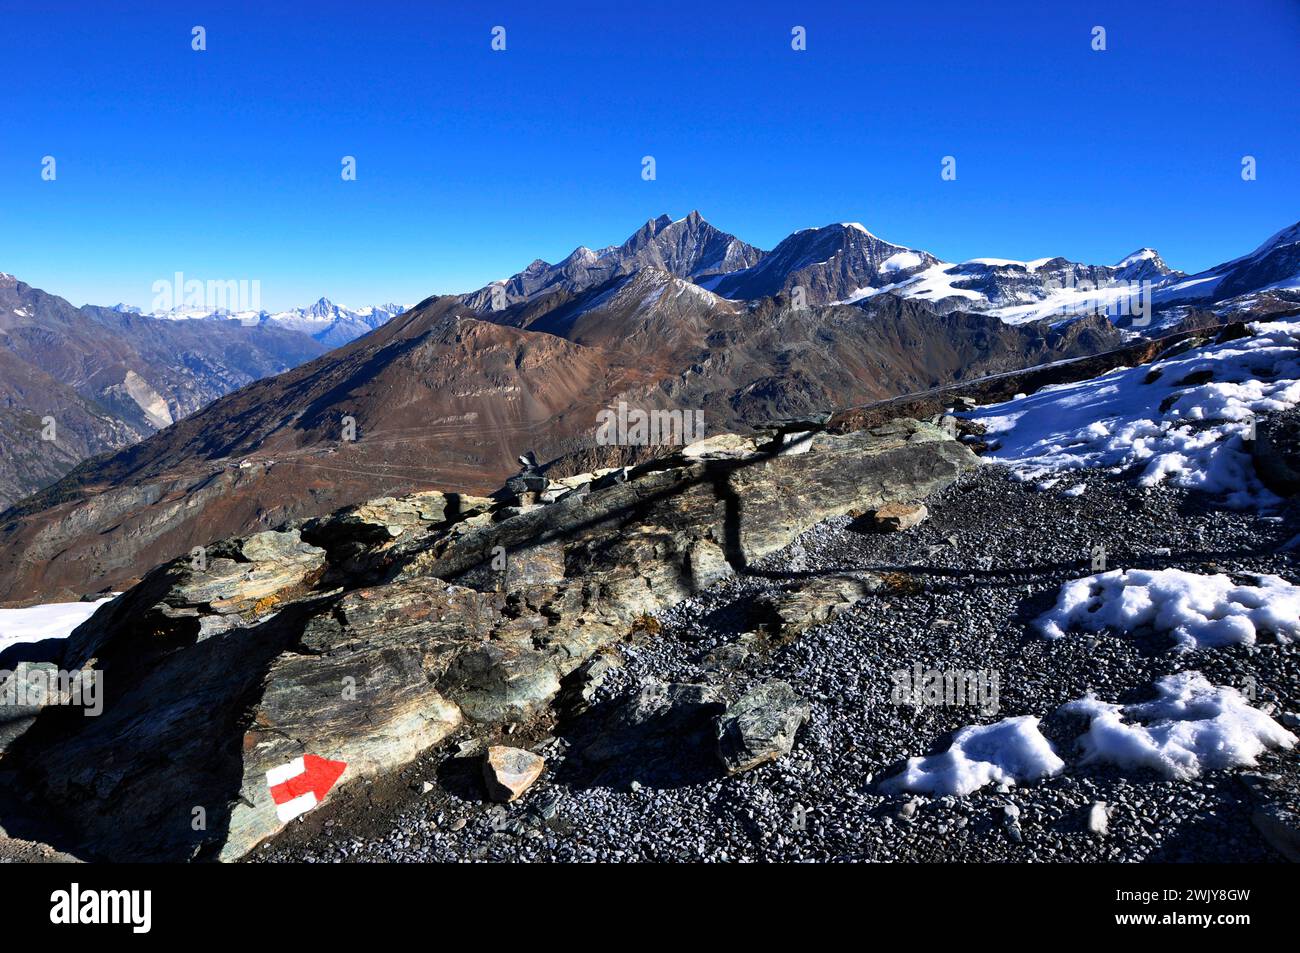 Swiss alps: Trekking path on Gornergrad to the melting glaciers  | Alpinismus: Wanderwege auf dem Gornergrad. Der Klimawandel lässt die Gletscher schm Stock Photo